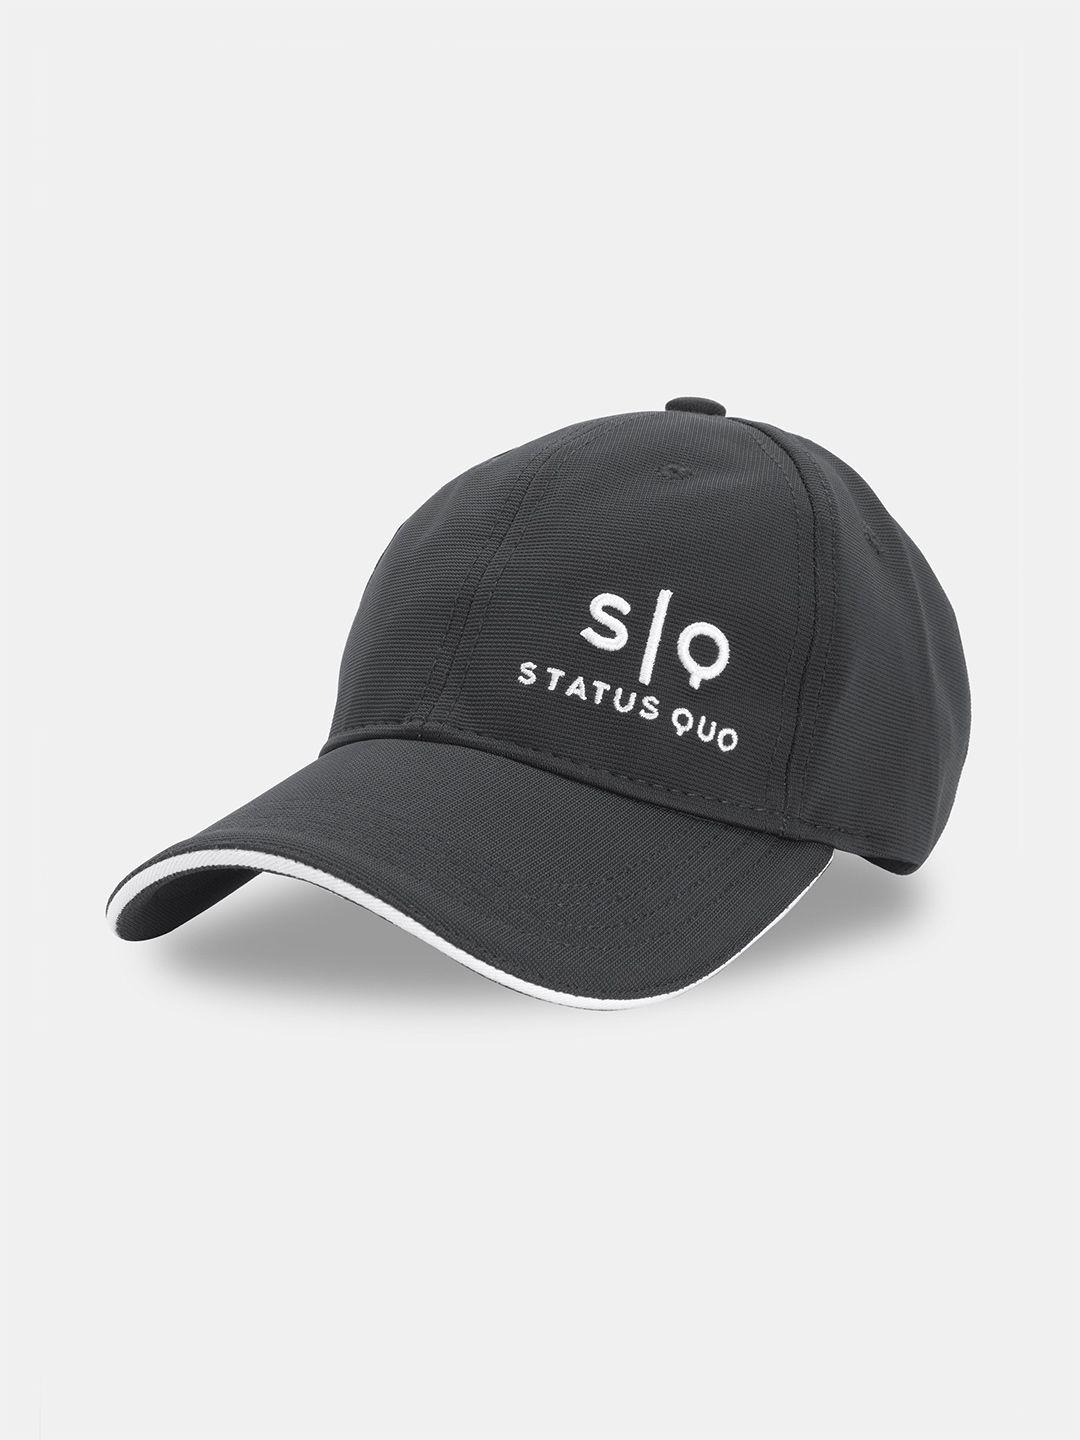 status quo men embroidered baseball cap